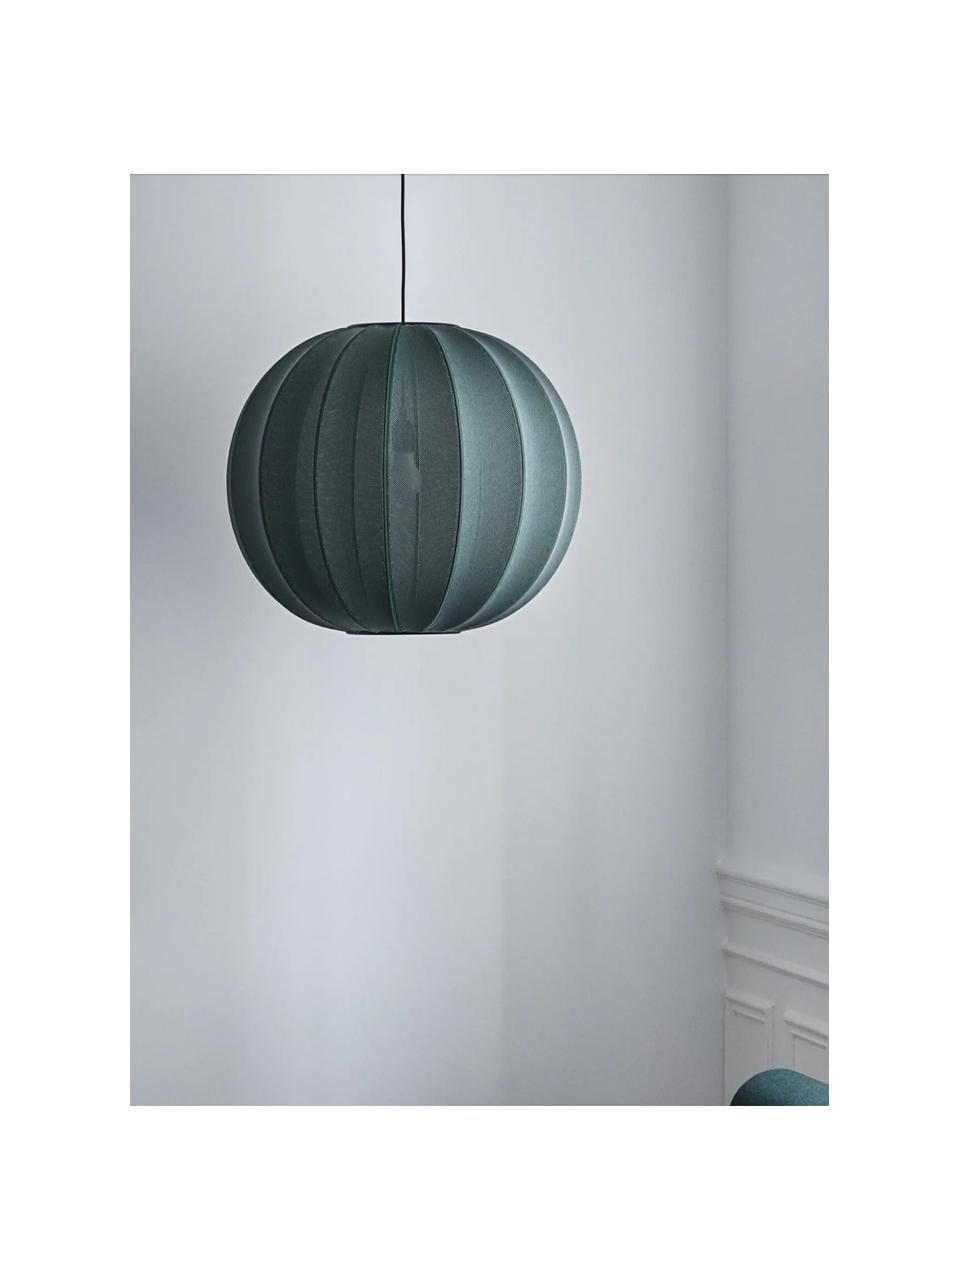 Hanglamp Knit-Wit, Lampenkap: kunstvezel, Decoratie: gecoat metaal, Grijsblauw, Ø 45 x H 36 cm